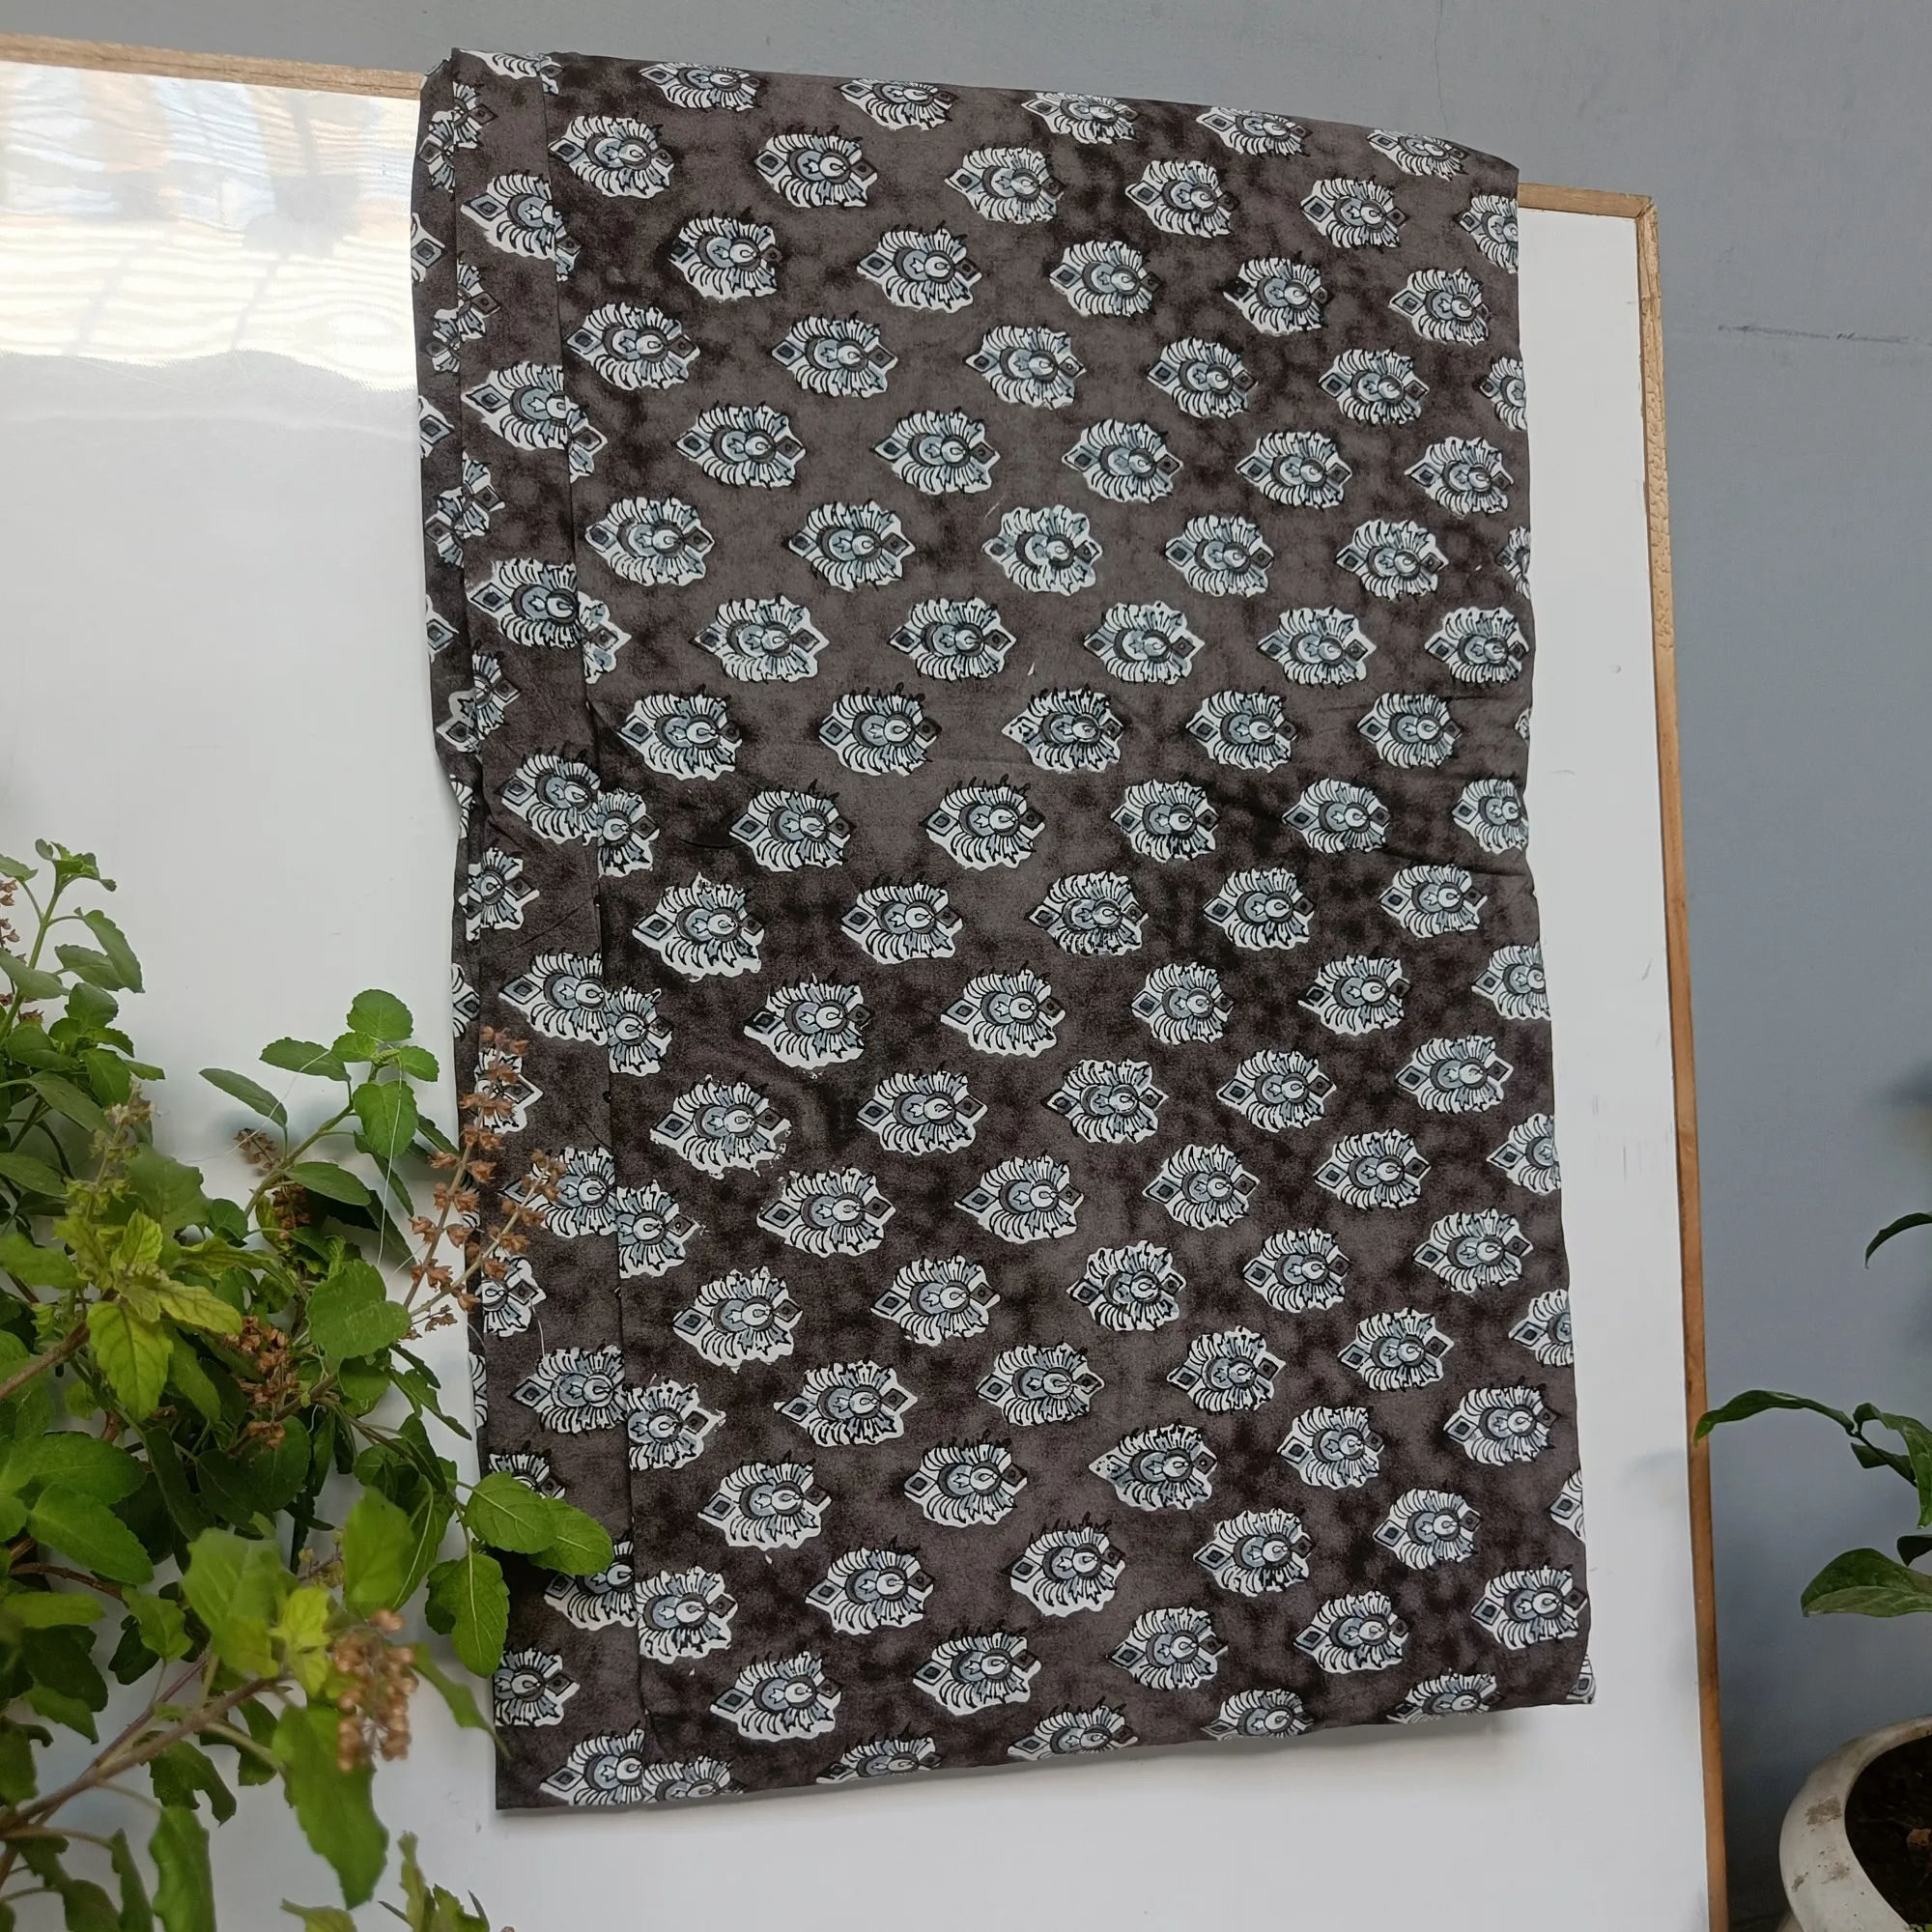 ผ้าคอตตอนพิมพ์ลายไม้ขนาดใหญ่ผ้าคอตตอนพิมพ์ลายบล็อกด้วยมือ